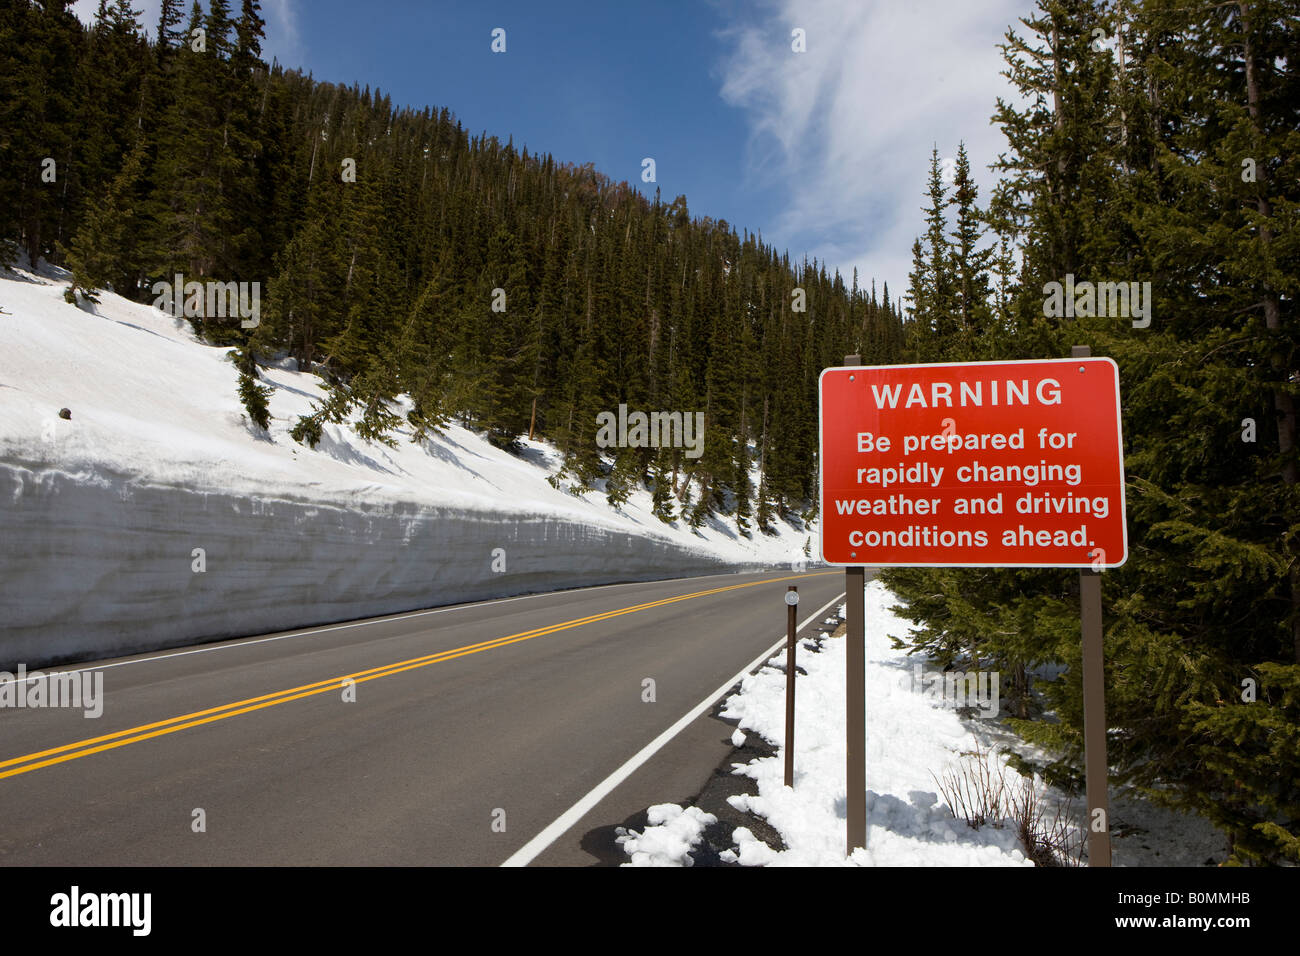 Panneau d'avertissement qui indique être prêt pour l'évolution rapide des conditions météorologiques et les conditions de conduite à venir Trail Ridge Road PNMR Colorado USA Banque D'Images